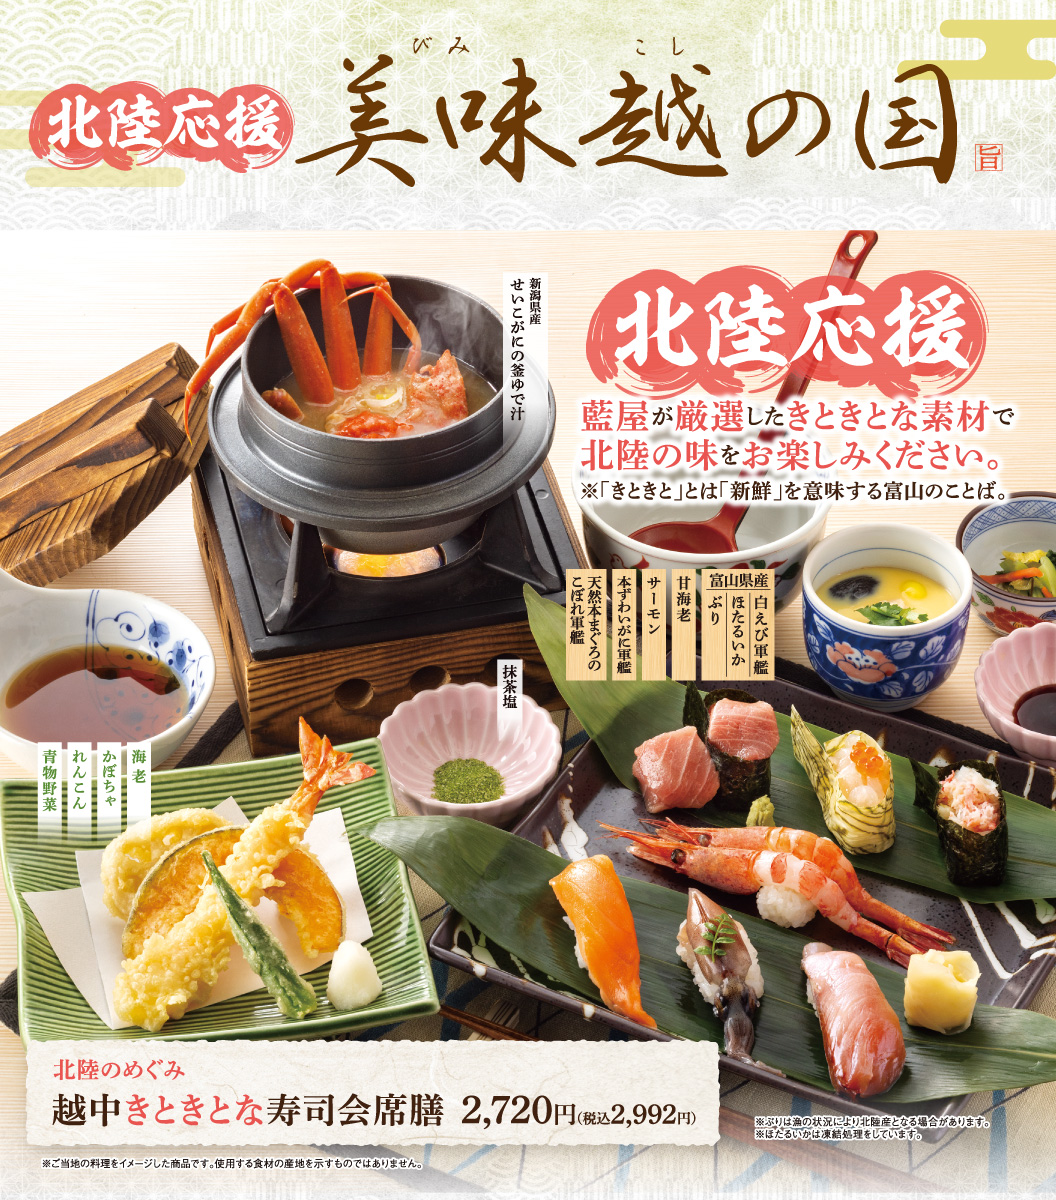 การสนับสนุน Hokuriku ดินแดนแห่ง Etsu แสนอร่อย คำอวยพรของ Hokuriku และพิธีทำซูชิ Kitokina ที่จัดขึ้นใน Etchu